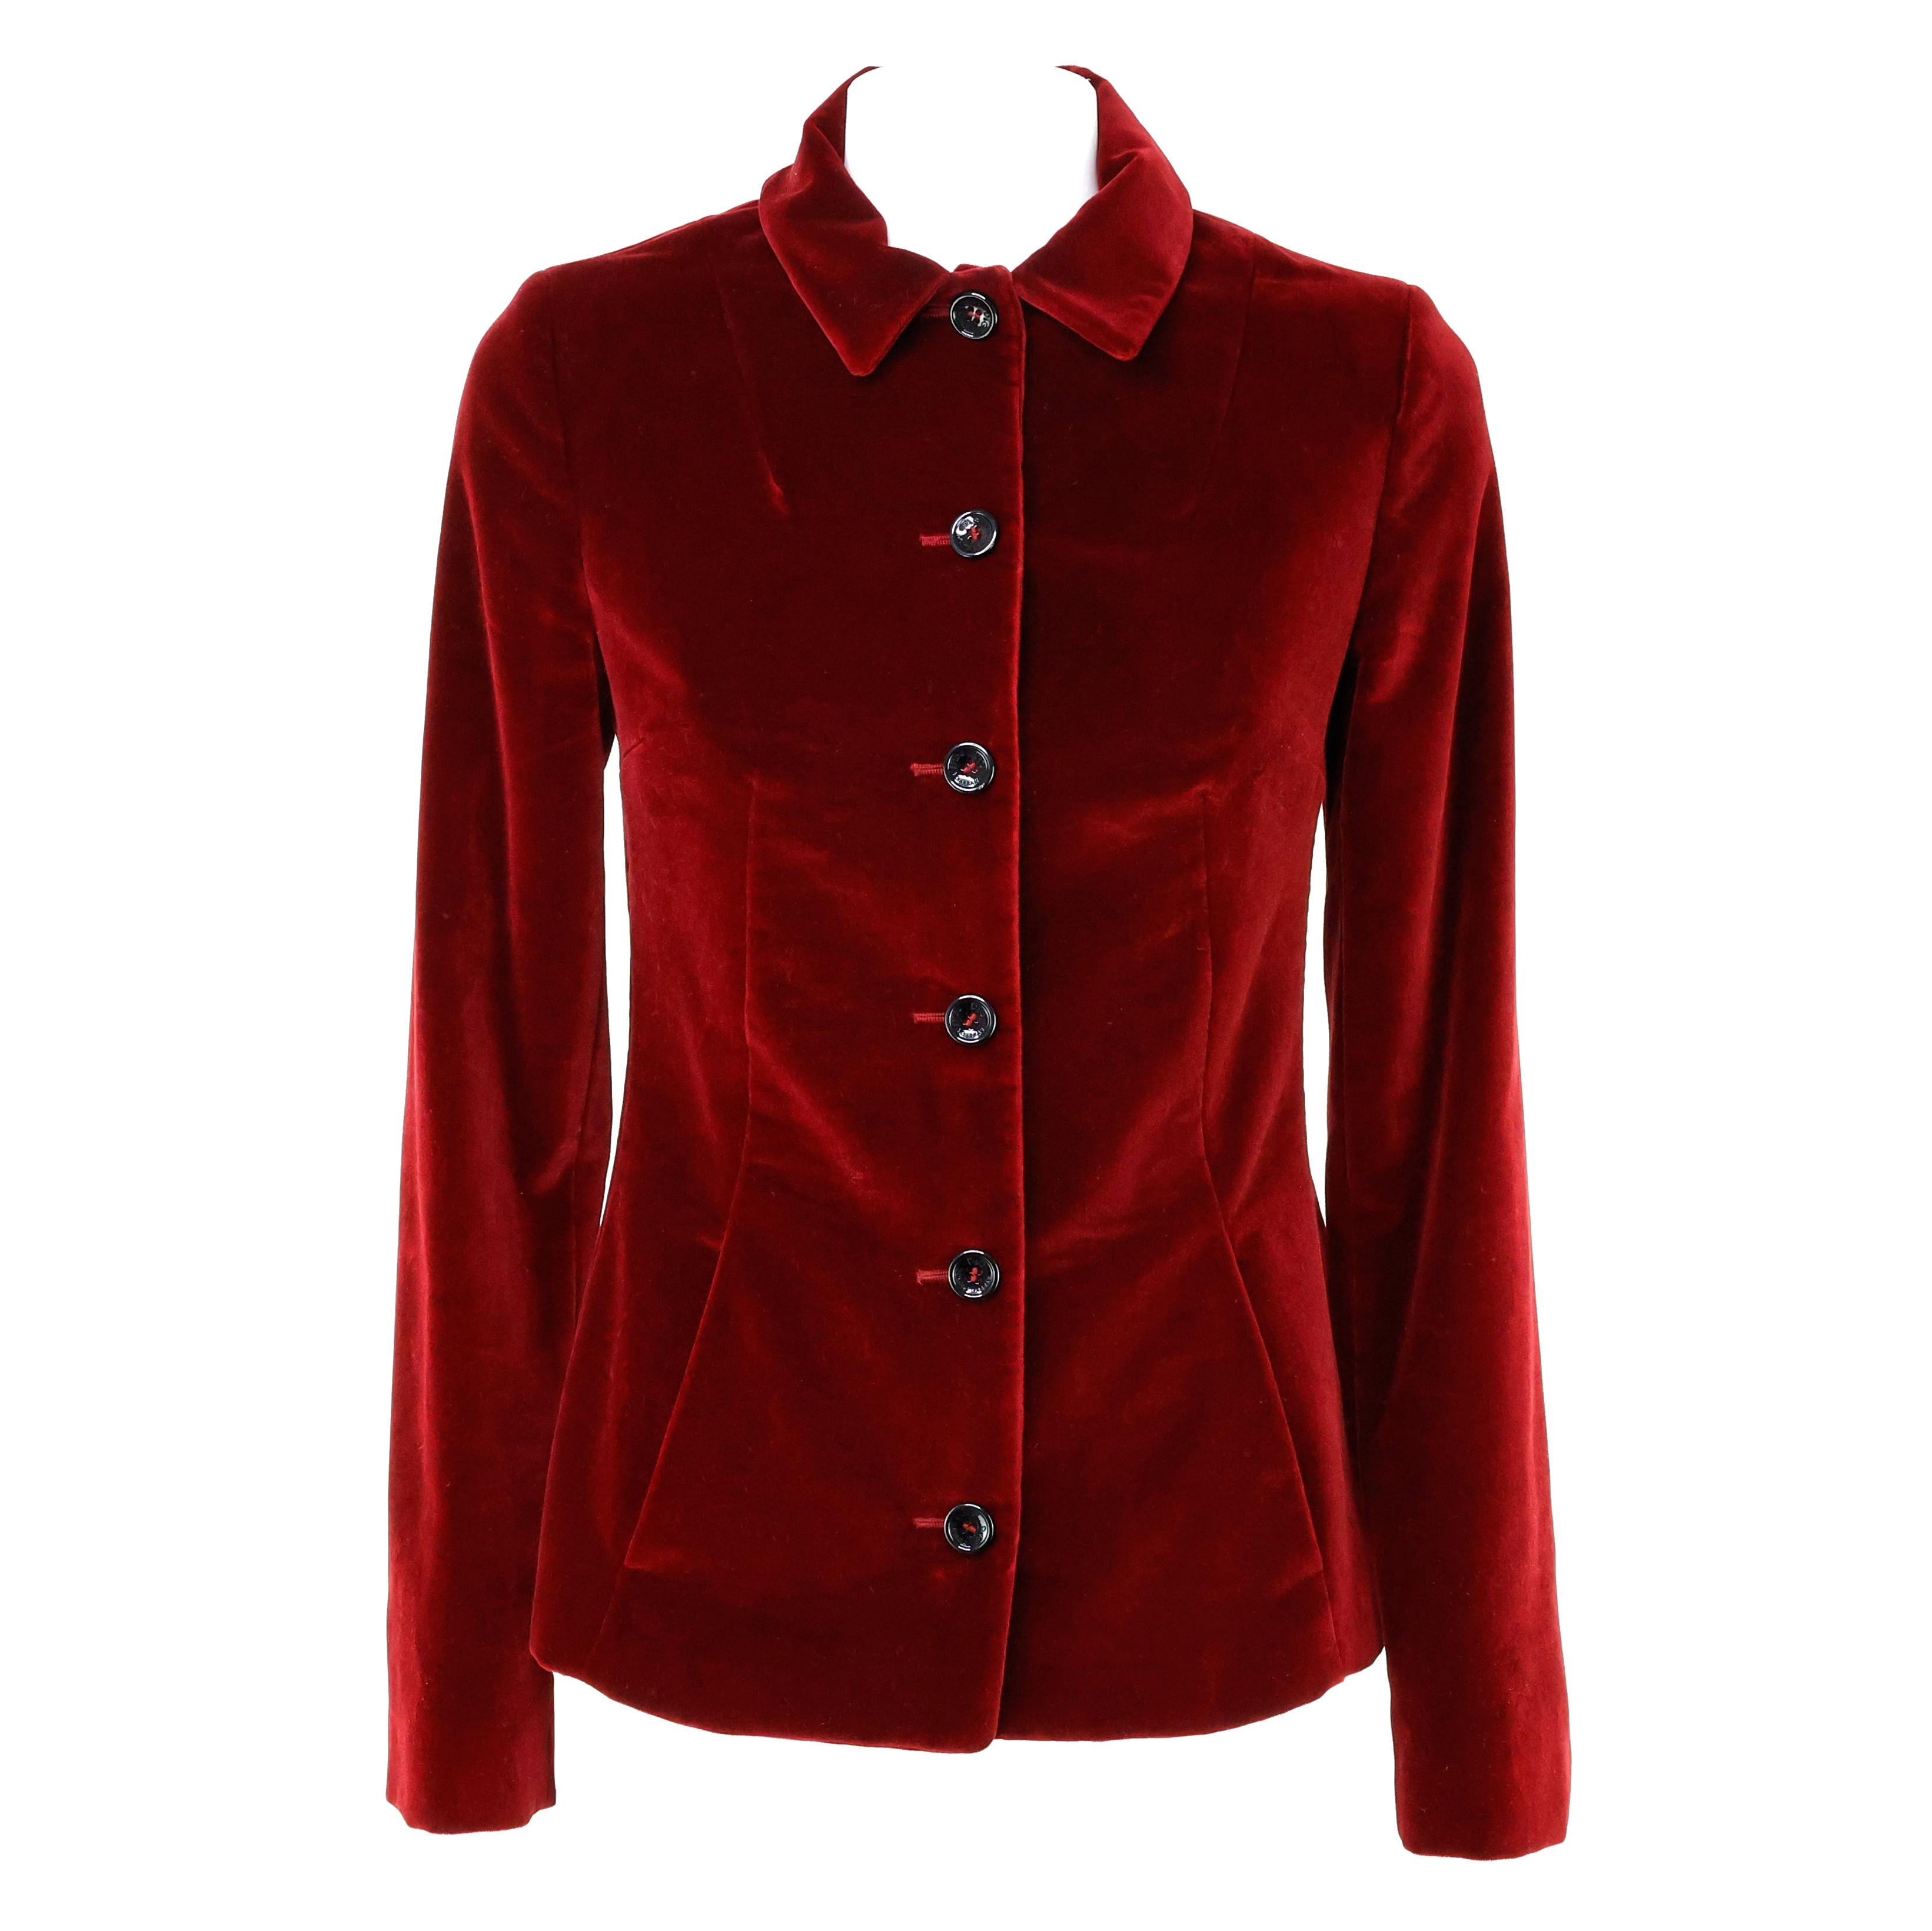 Veste Dolce e Gabbana en velours de couleur rouge / bordeaux. Taille 40 IT.


Condit :
Vraiment bien.